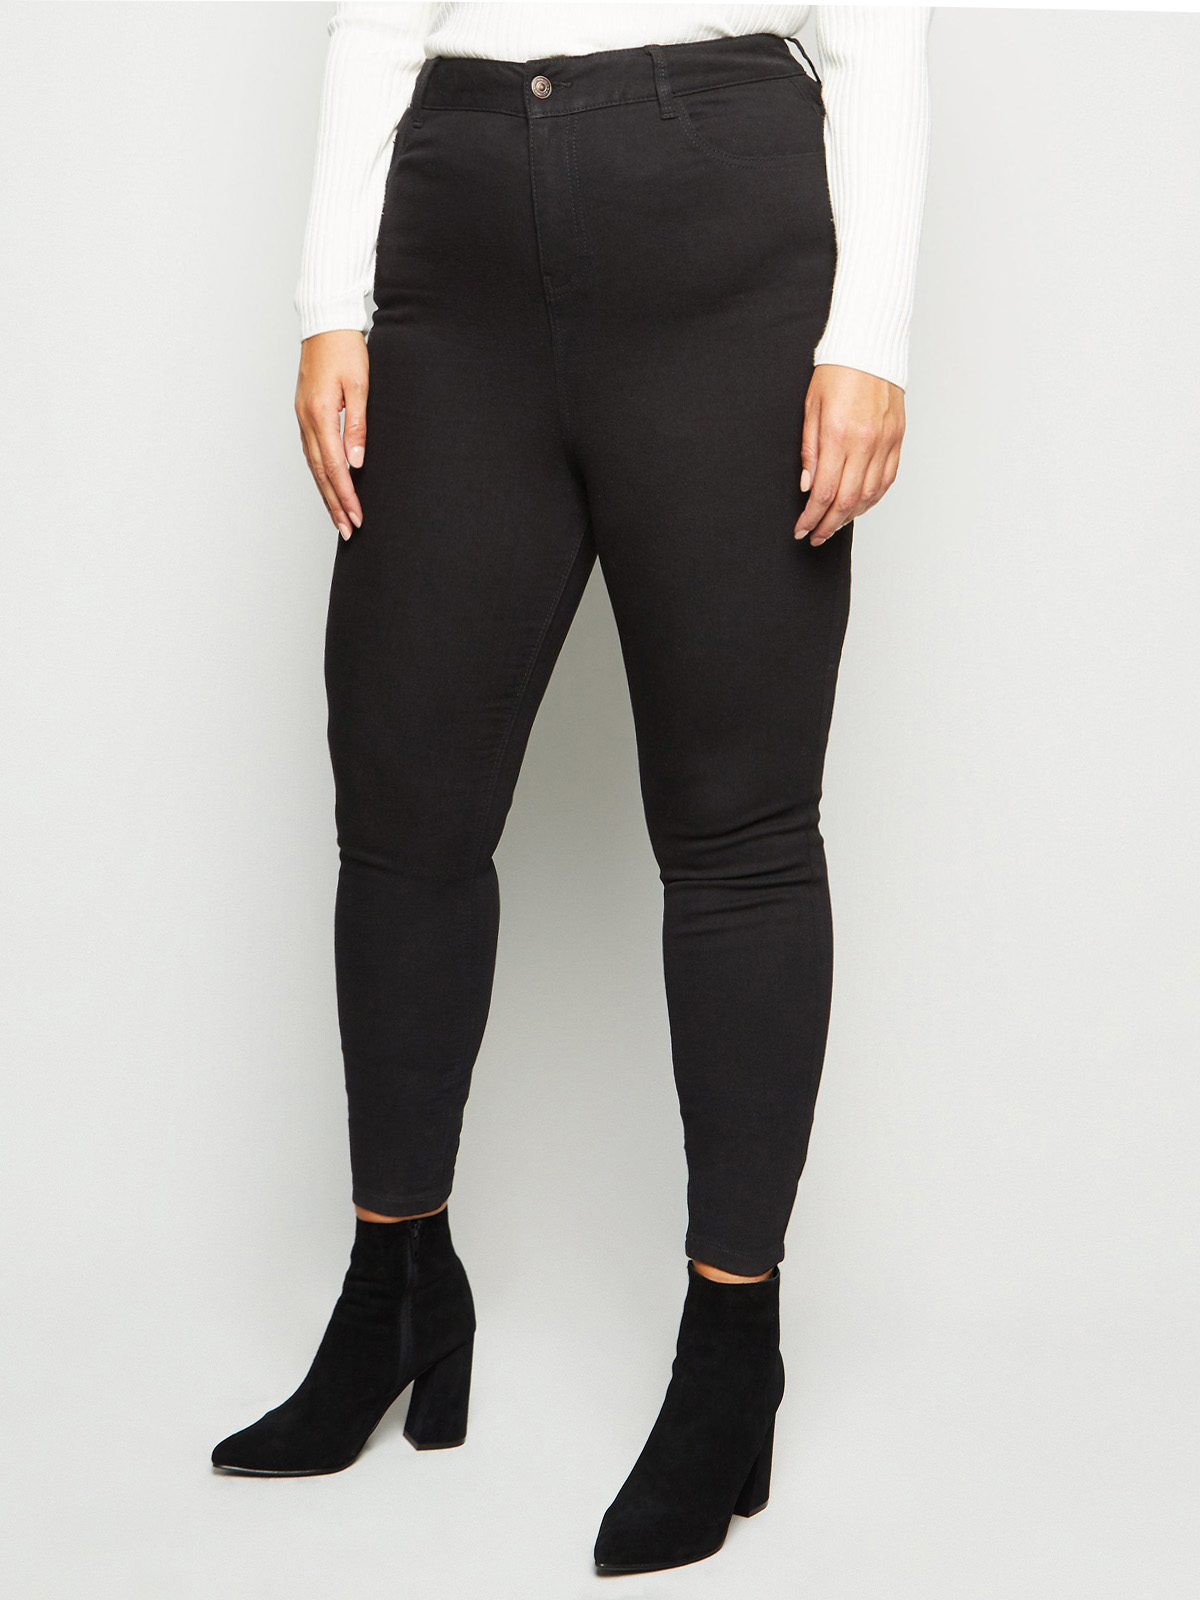 N3W L00K BLACK High Waist Jenna Skinny Jeans - Plus Size 18 to 28